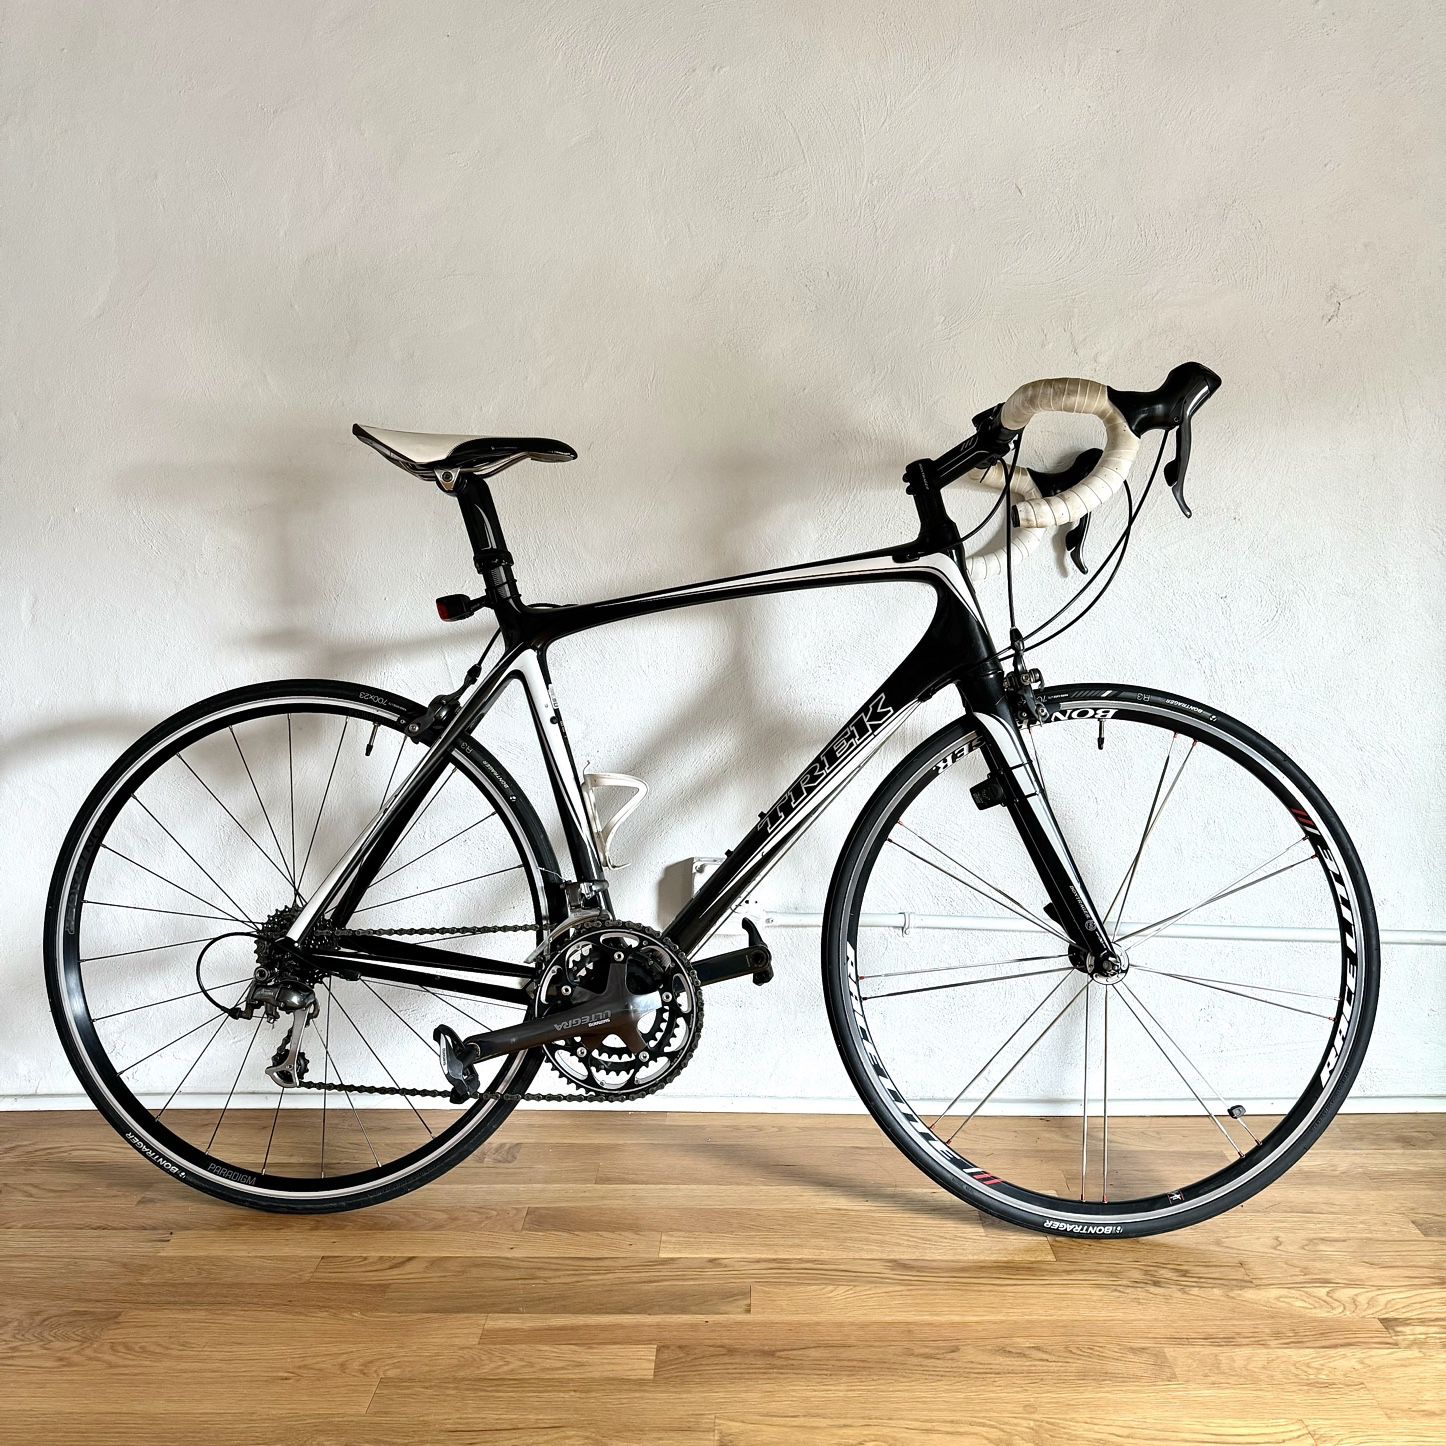 Trek Madone 5.2, Shimano Ultegra, Carbon Fiber Road Bike-2009, 56cm